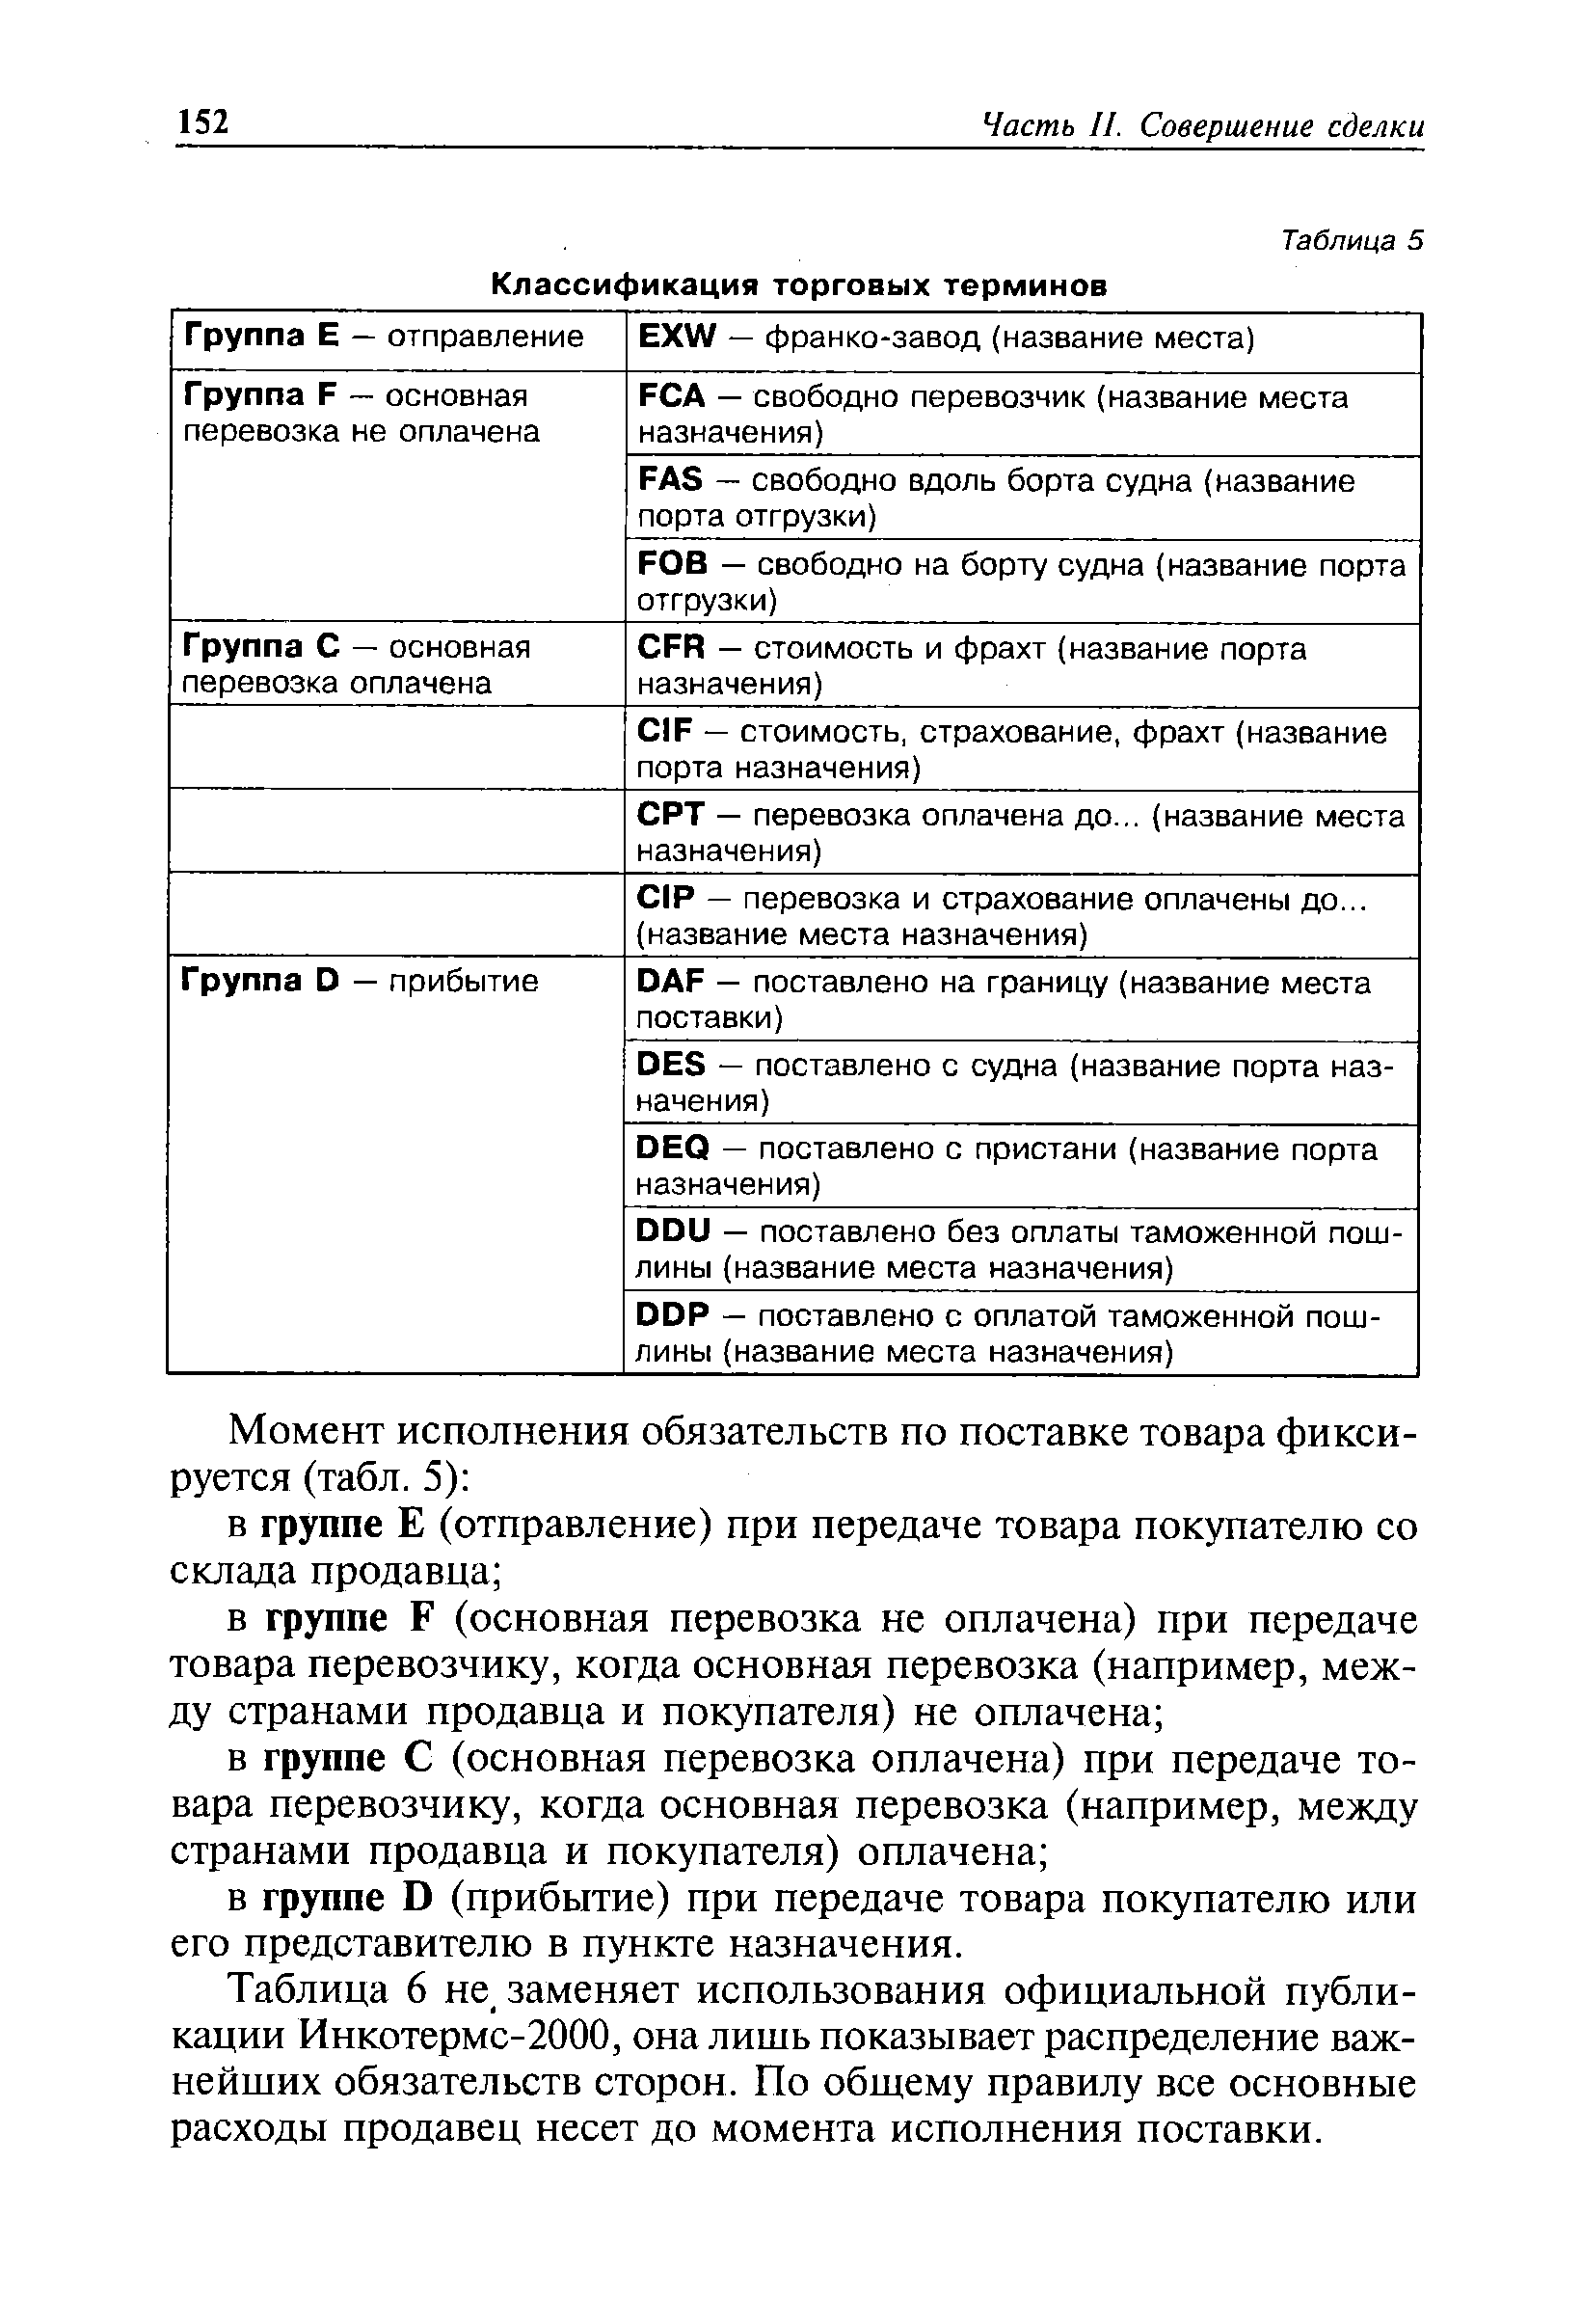 Таблица 5 Классификация торговых терминов
